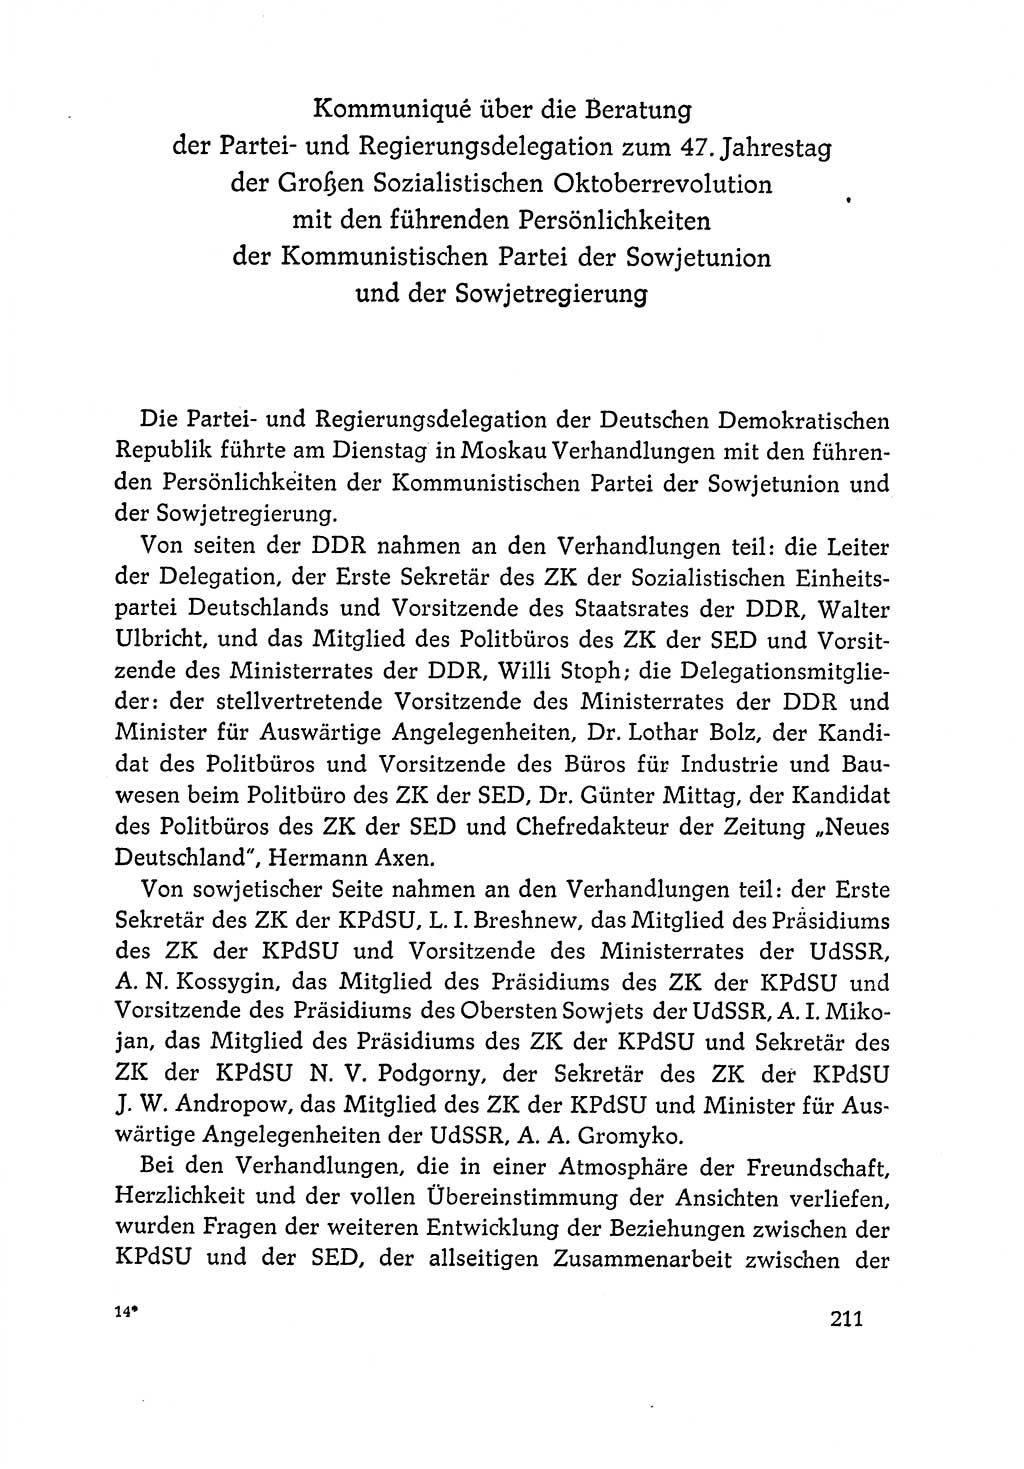 Dokumente der Sozialistischen Einheitspartei Deutschlands (SED) [Deutsche Demokratische Republik (DDR)] 1964-1965, Seite 211 (Dok. SED DDR 1964-1965, S. 211)